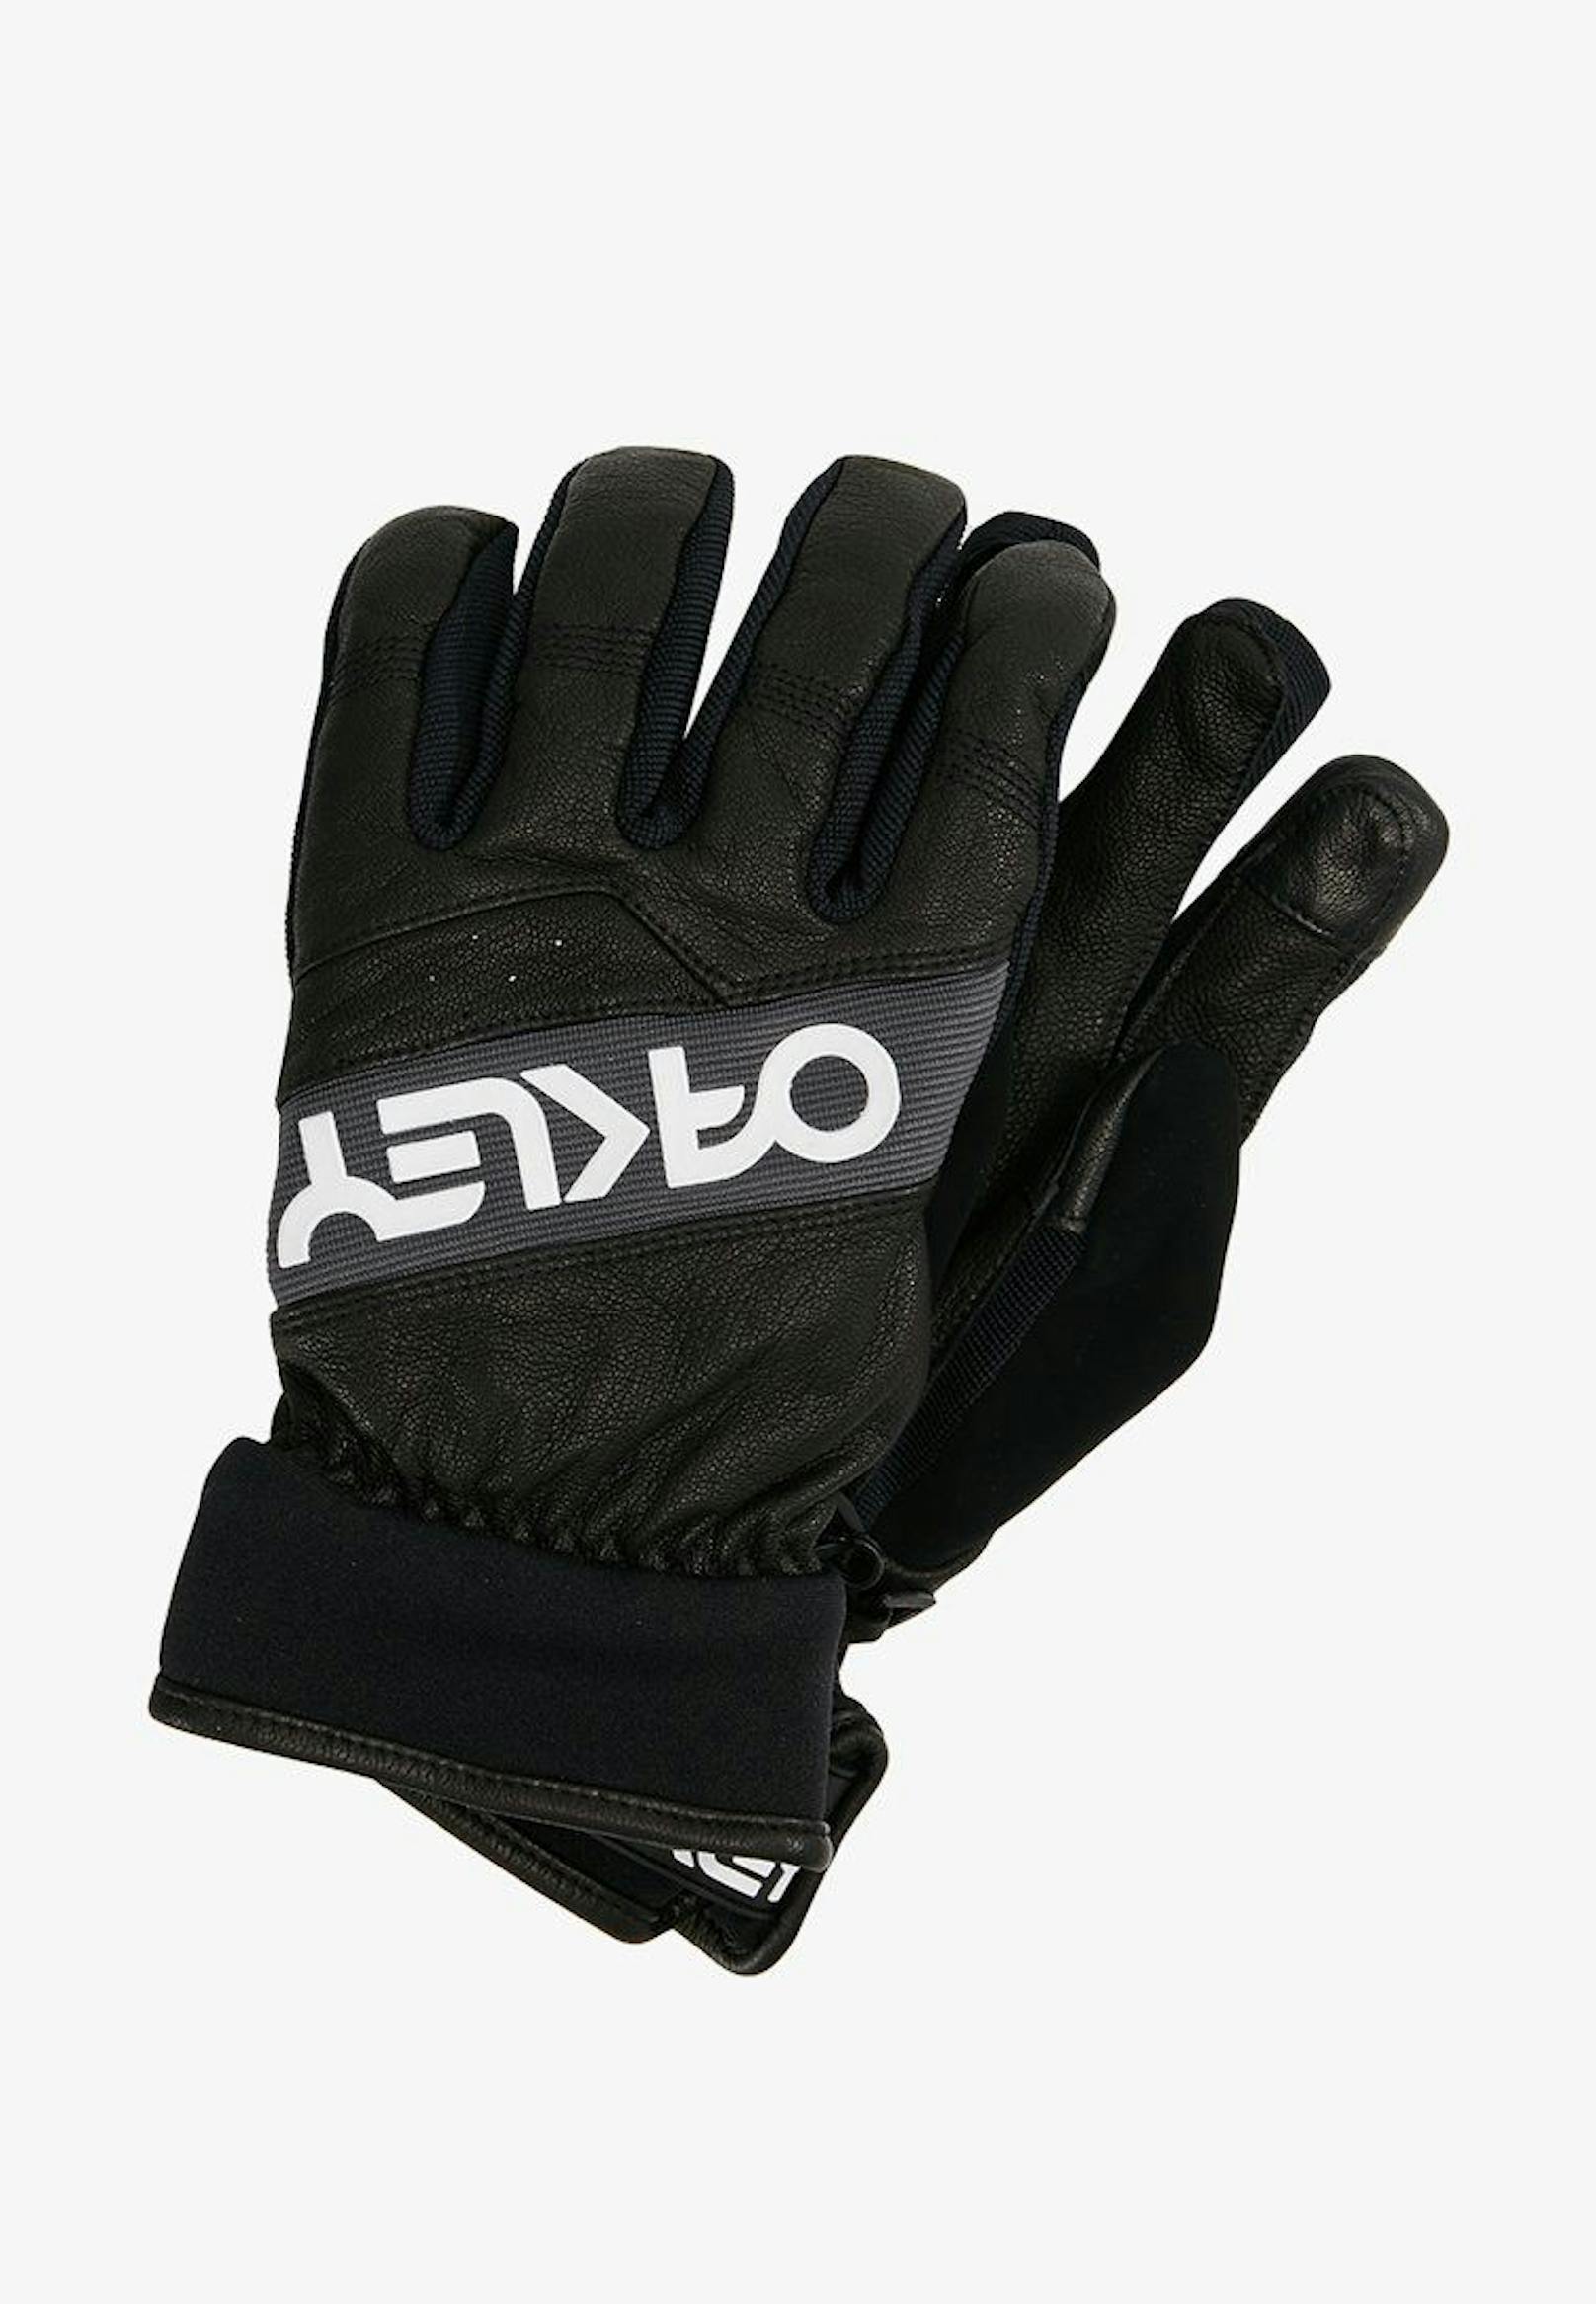 Factory Winter Glove Fingerhandschuh von Oakley: <strong><a target="_blank" href="https://www.zalando.at/oakley-factory-winter-glove-fingerhandschuh-oa342l02n-q11.html">Im Zalando-Shop um € 59,99 zu haben.</a></strong>